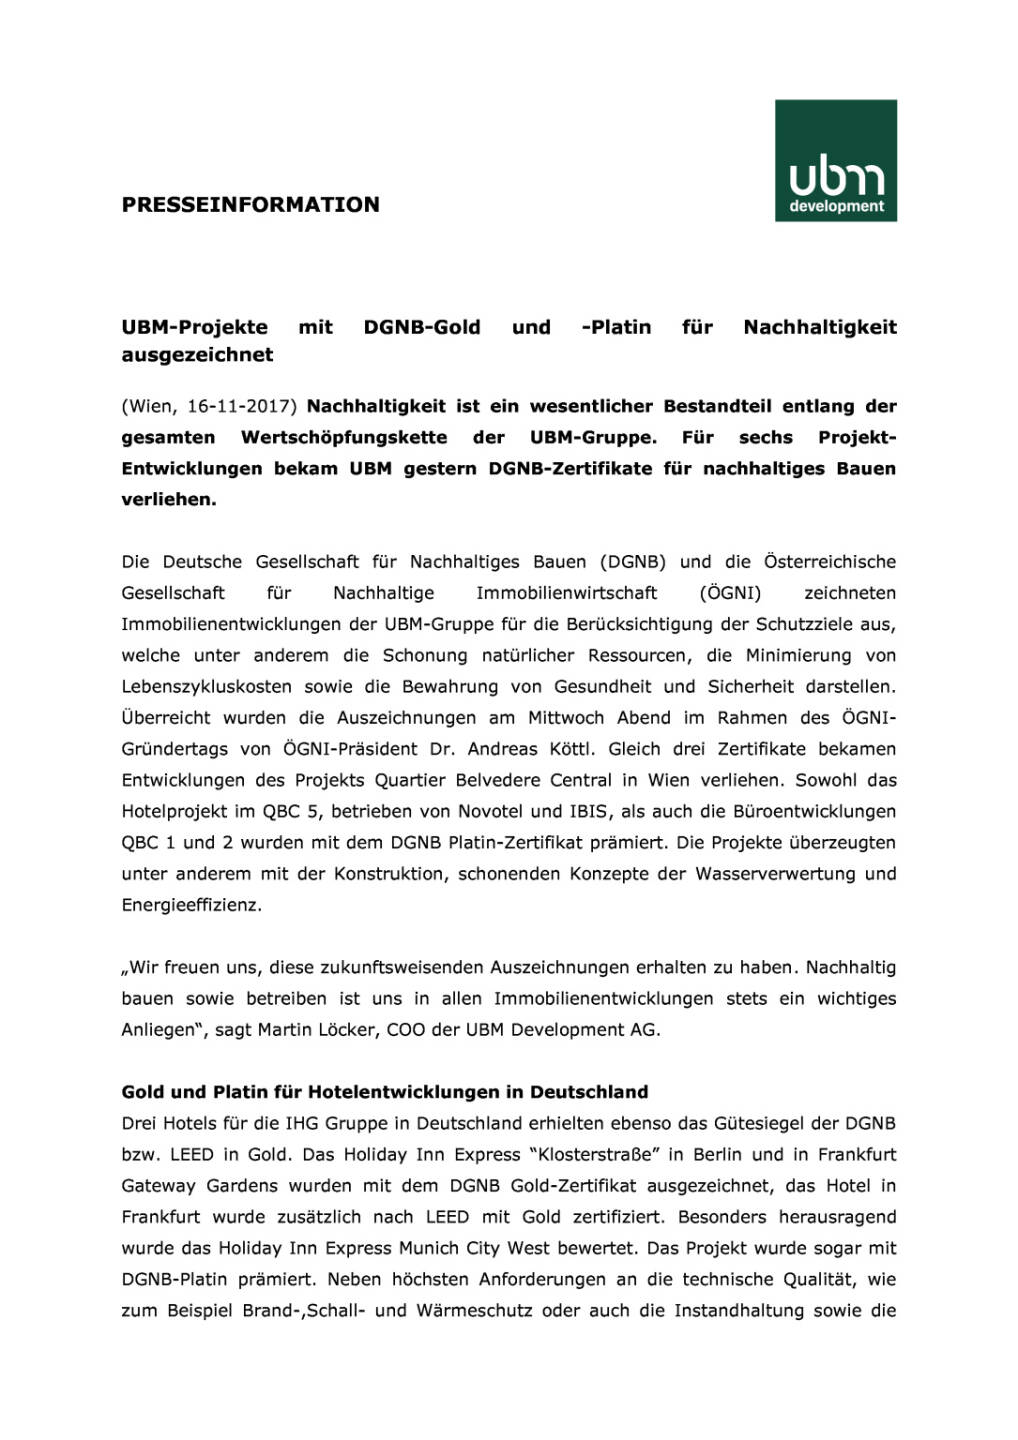 UBM-Projekte mit DGNB-Gold und -Platin für Nachhaltigkeit ausgezeichnet, Seite 1/2, komplettes Dokument unter http://boerse-social.com/static/uploads/file_2394_ubm-projekte_mit_dgnb-gold_und_-platin_fur_nachhaltigkeit_ausgezeichnet.pdf